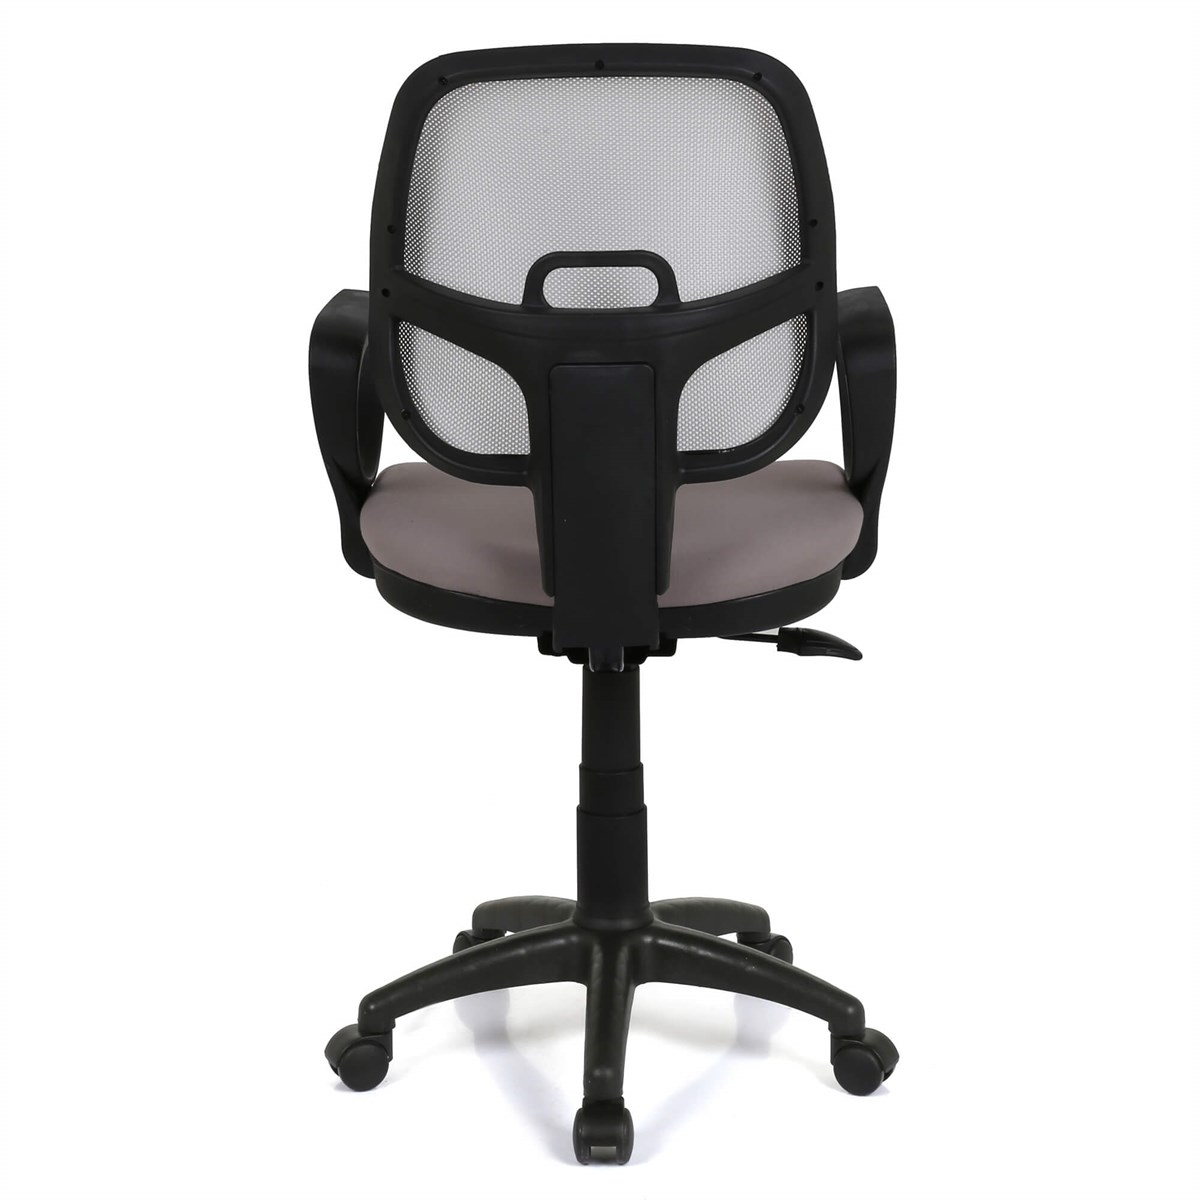 Ofis Sandalyesi | Seduna Evo XWork Çalışma Koltuğu